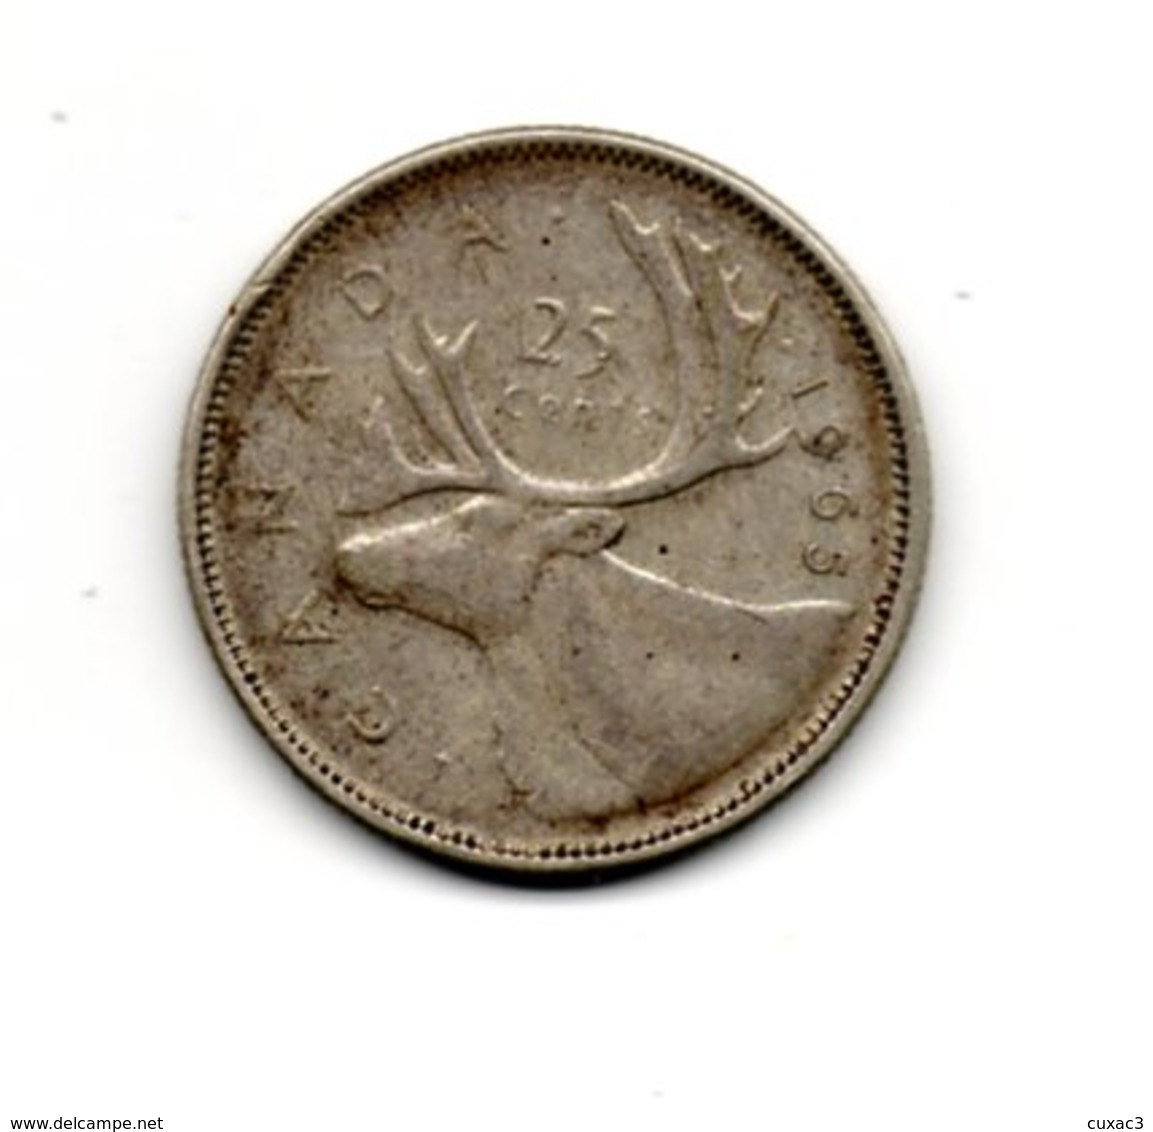 25 Cent - 1965  Argent - Canada